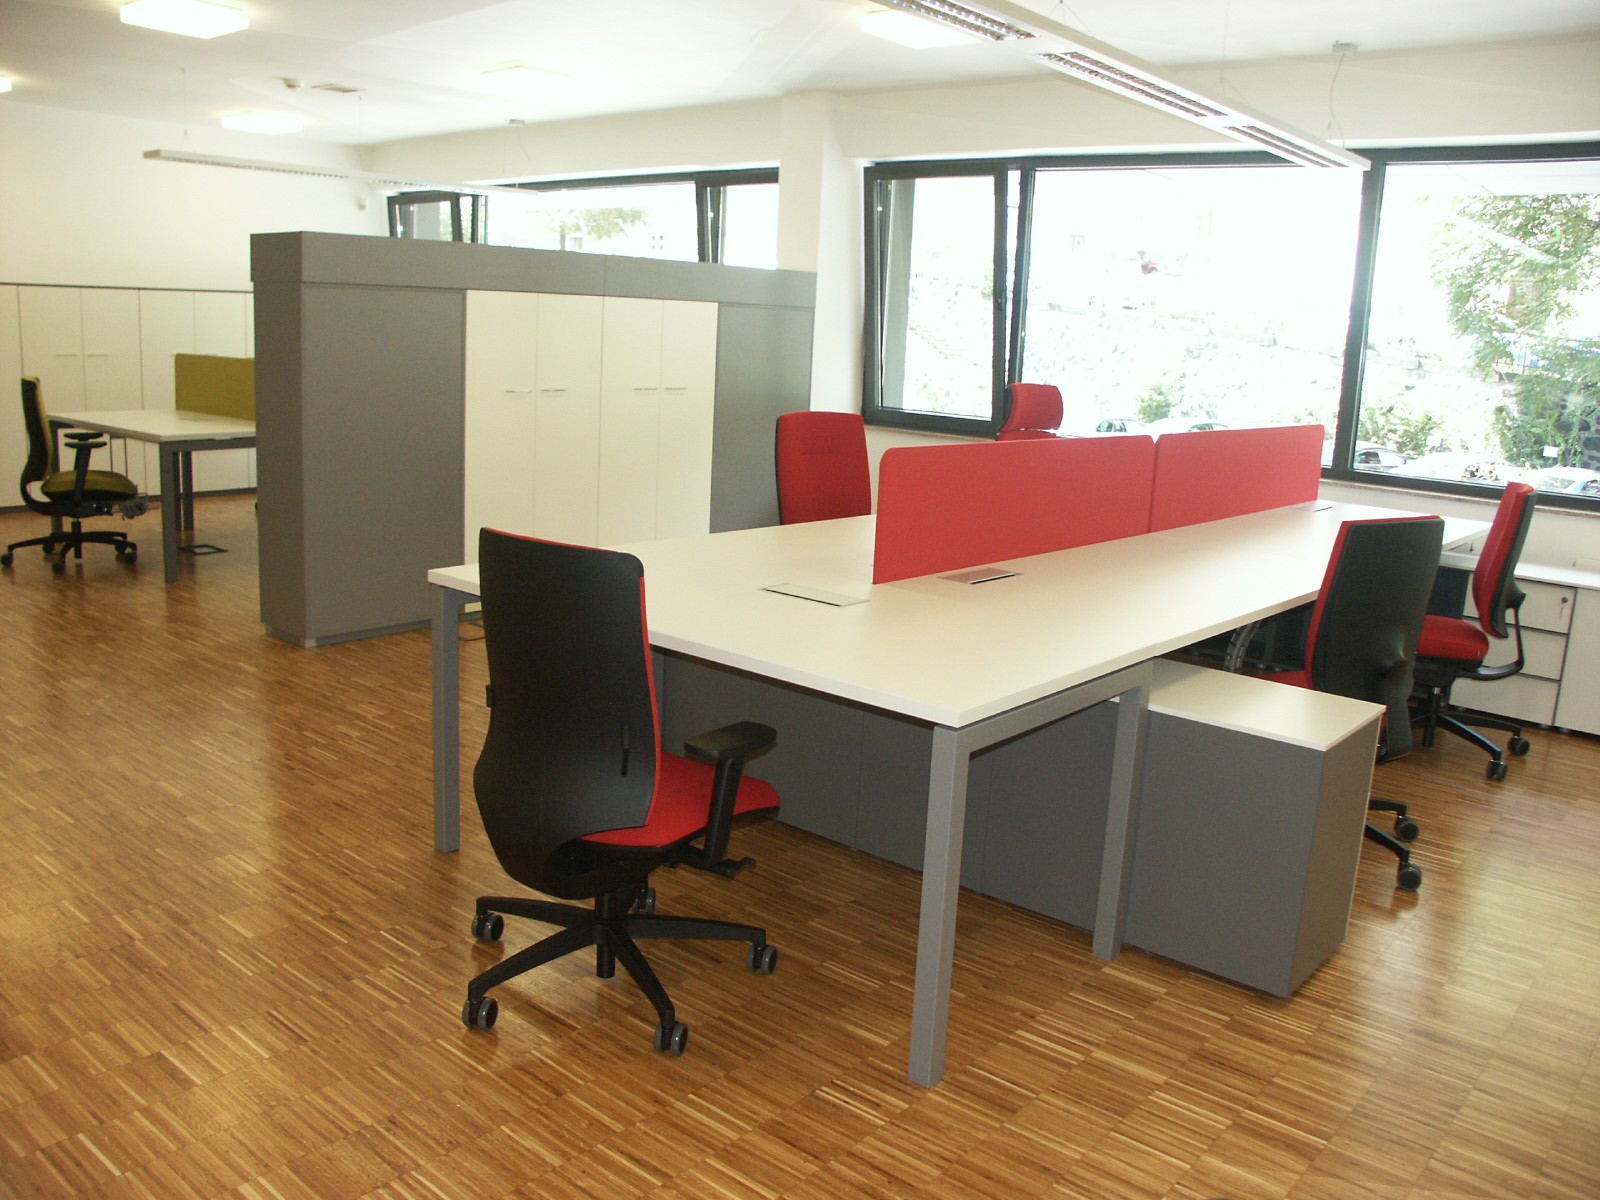 Kanceláře společnosti Krones, Praha - MARTEX office